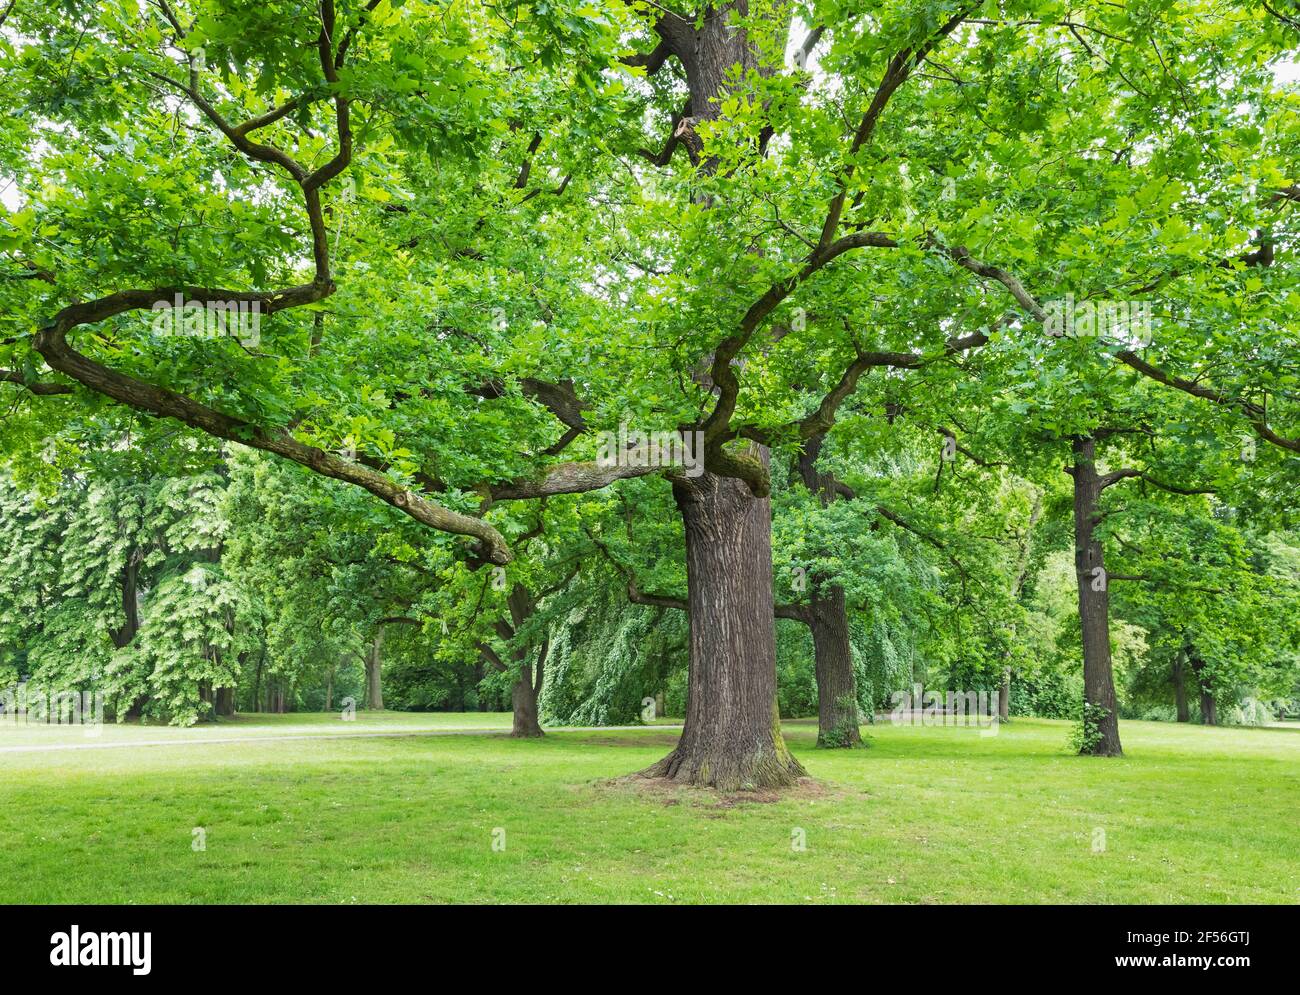 Germany, Saxony, Leipzig, Old oak tree growing in Palmengarten park Stock Photo